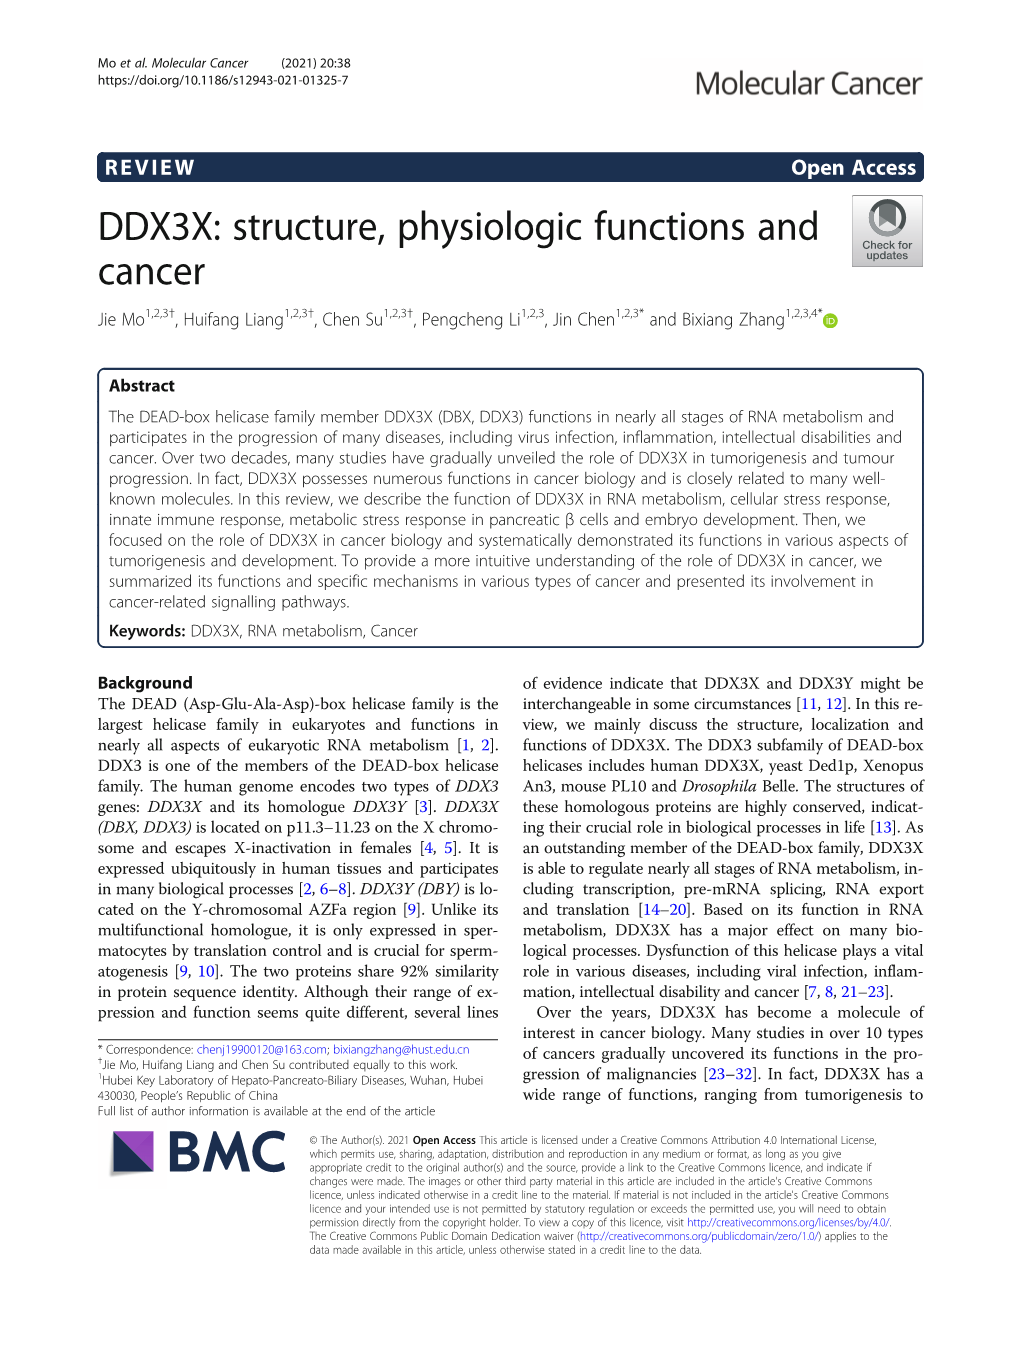 DDX3X: Structure, Physiologic Functions and Cancer Jie Mo1,2,3†, Huifang Liang1,2,3†, Chen Su1,2,3†, Pengcheng Li1,2,3, Jin Chen1,2,3* and Bixiang Zhang1,2,3,4*